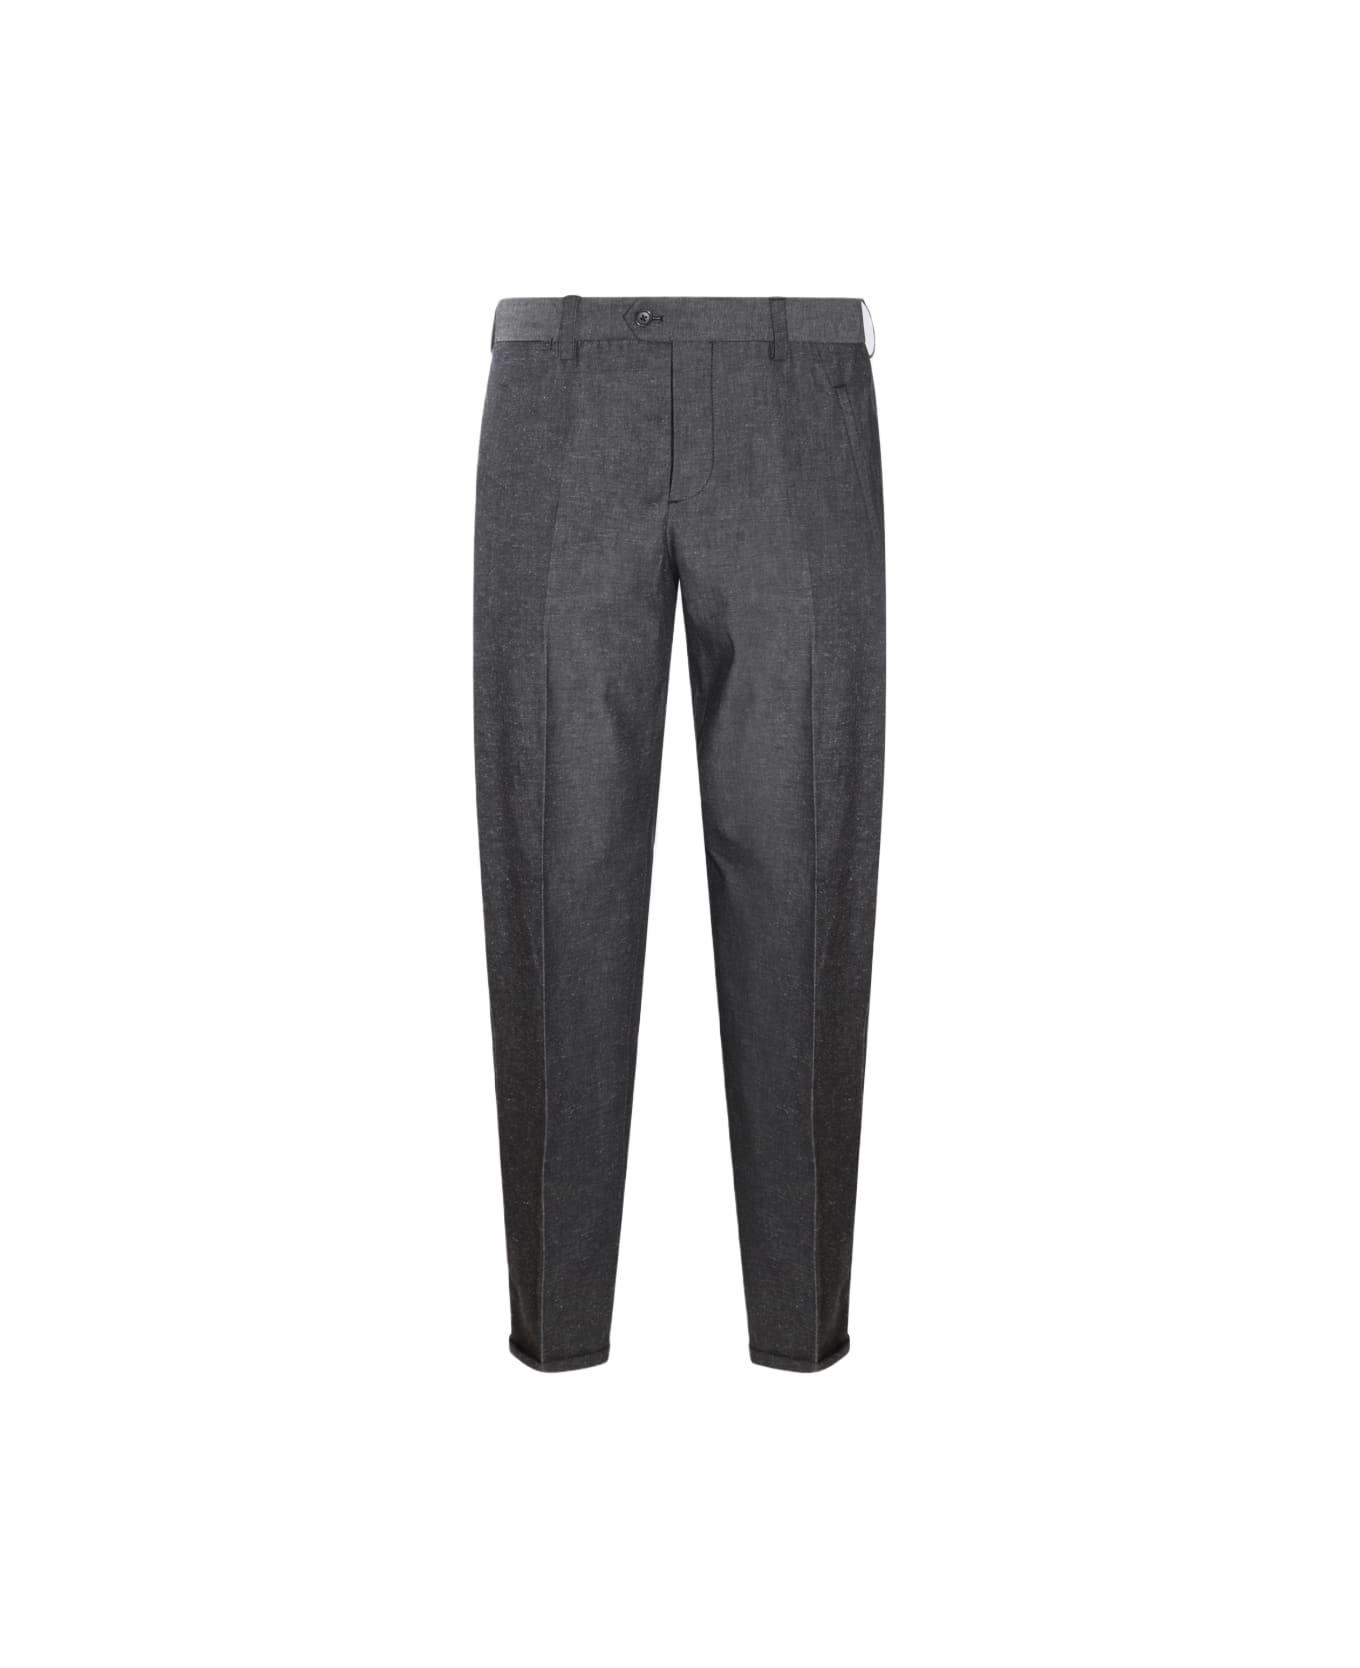 PT01 Grey Cotton Pants - Black